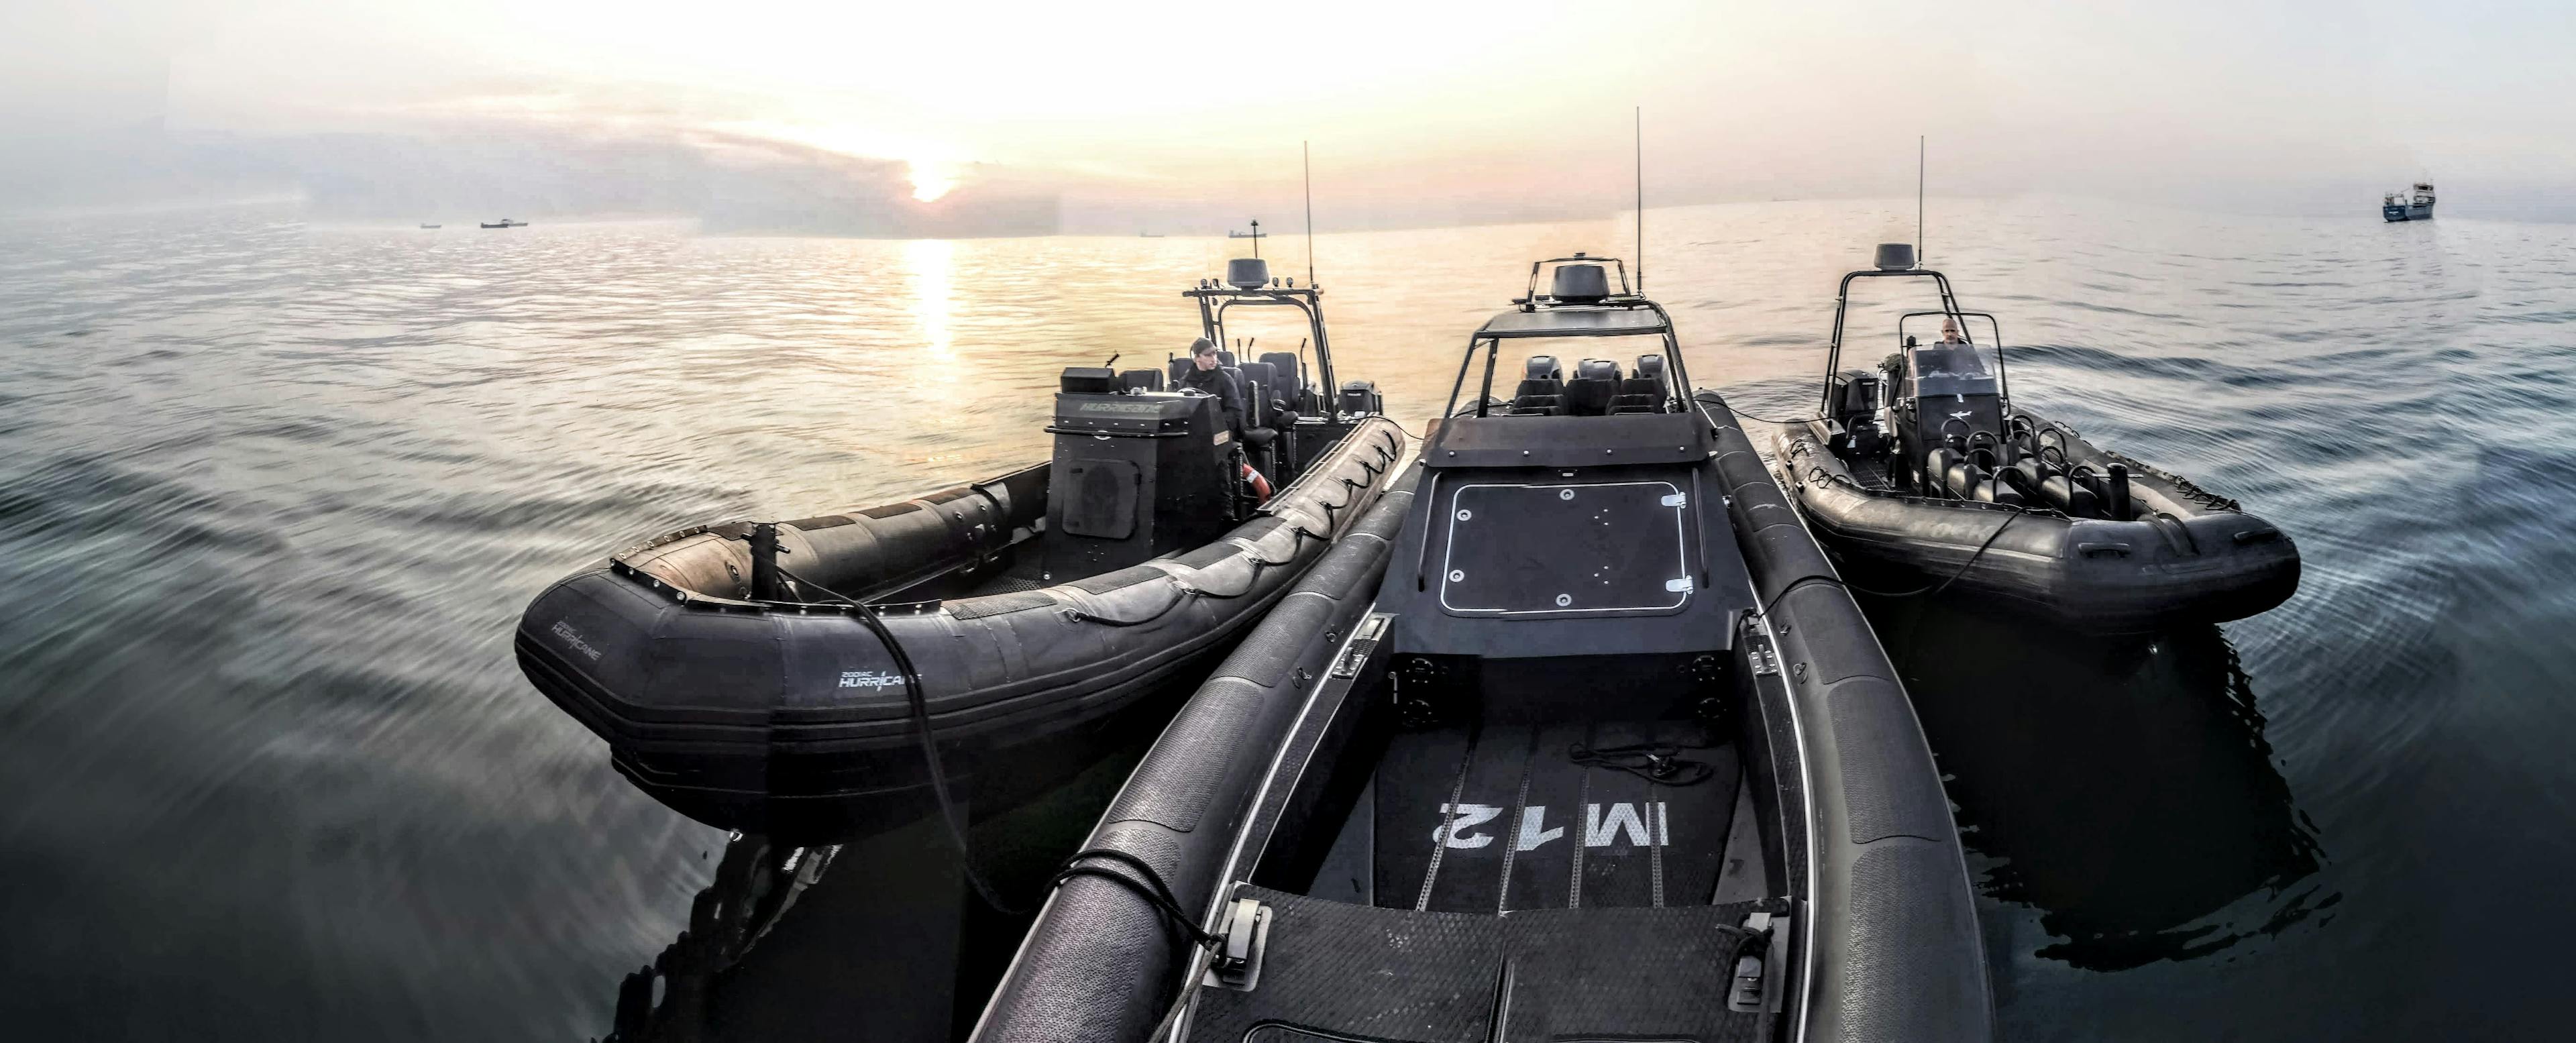 Military RHIBs | Schnellboot fahren | 1050PS | 15-20min